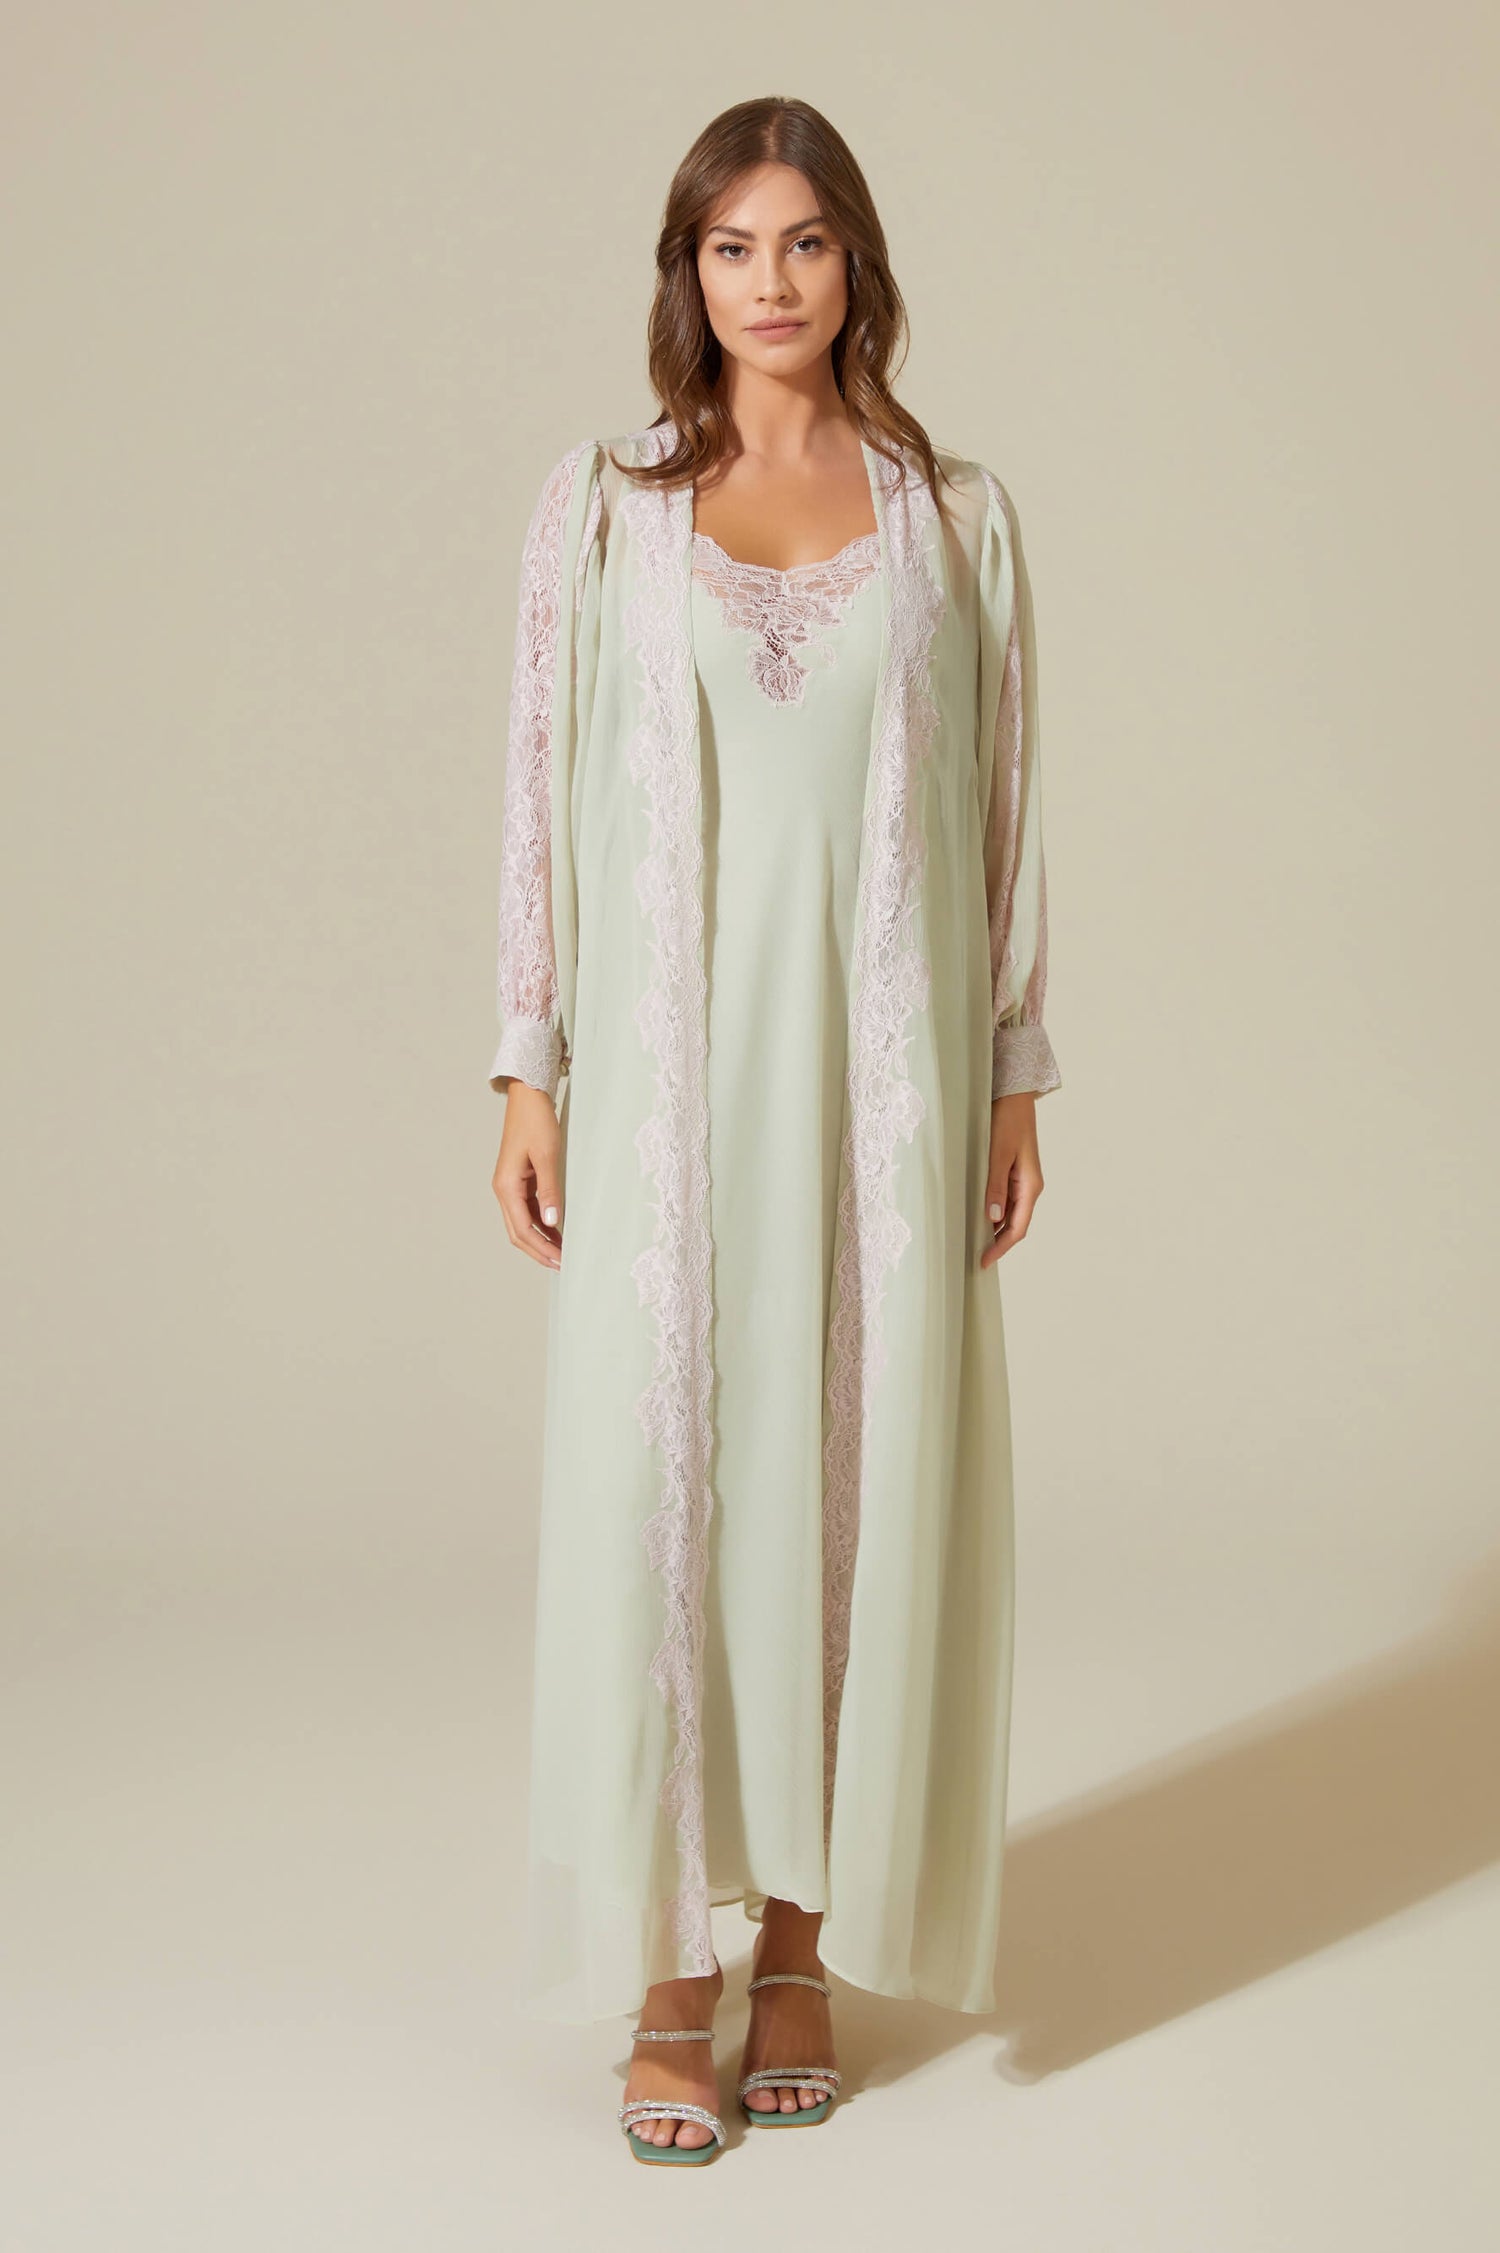 Carina Long Silk Chiffon Robe Set - Pink Lace on Sage Green